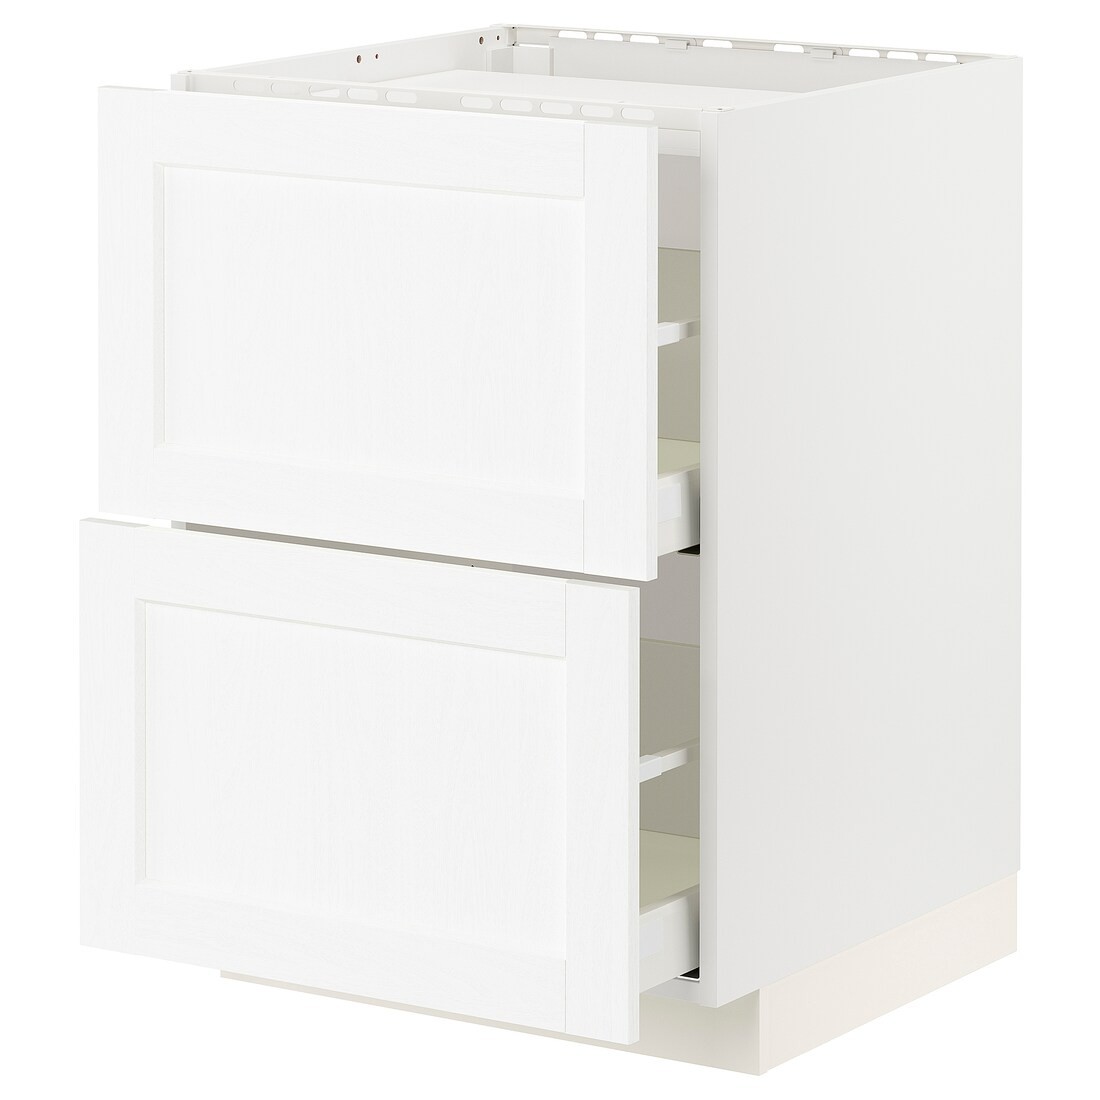 METOD МЕТОД / MAXIMERA МАКСИМЕРА Шкаф для варочной панели / 2 ящика, белый Enköping / белый имитация дерева, 60x60 см